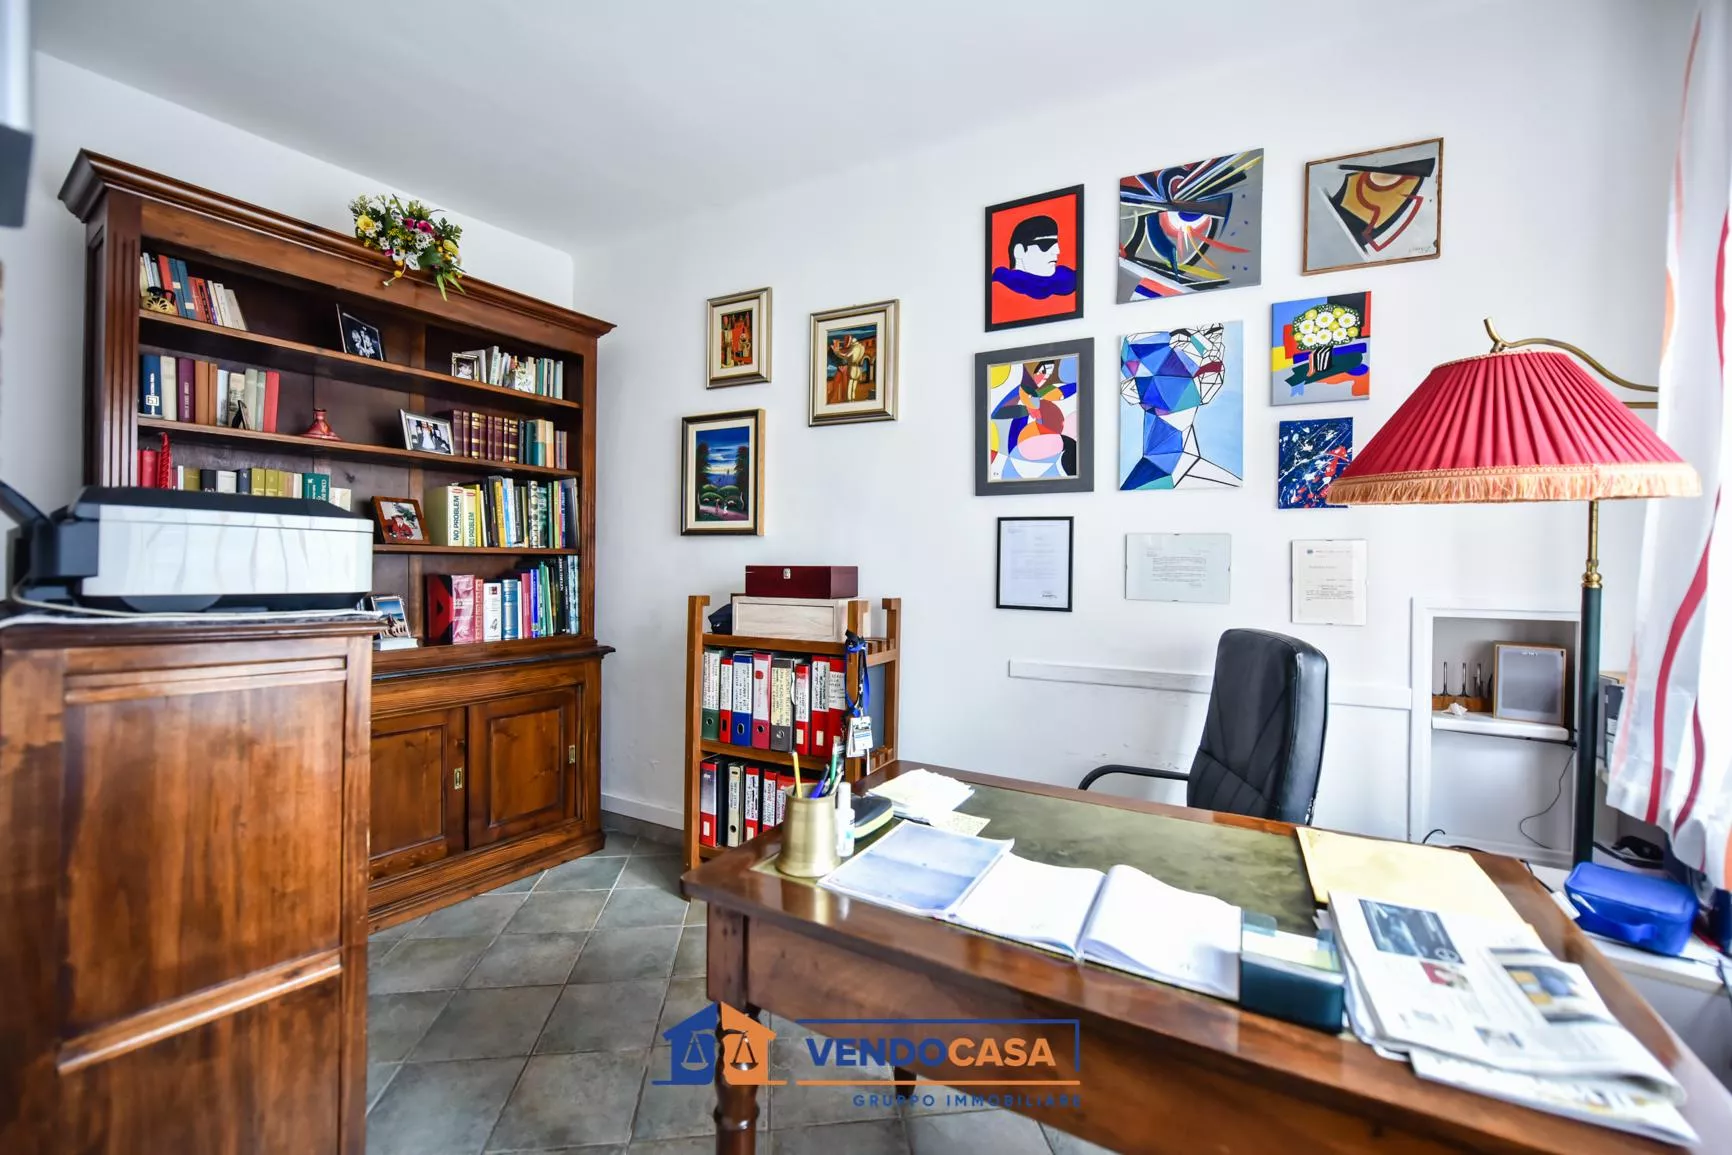 Immagine per Casa Indipendente in vendita a Villastellone via Cossolo 36